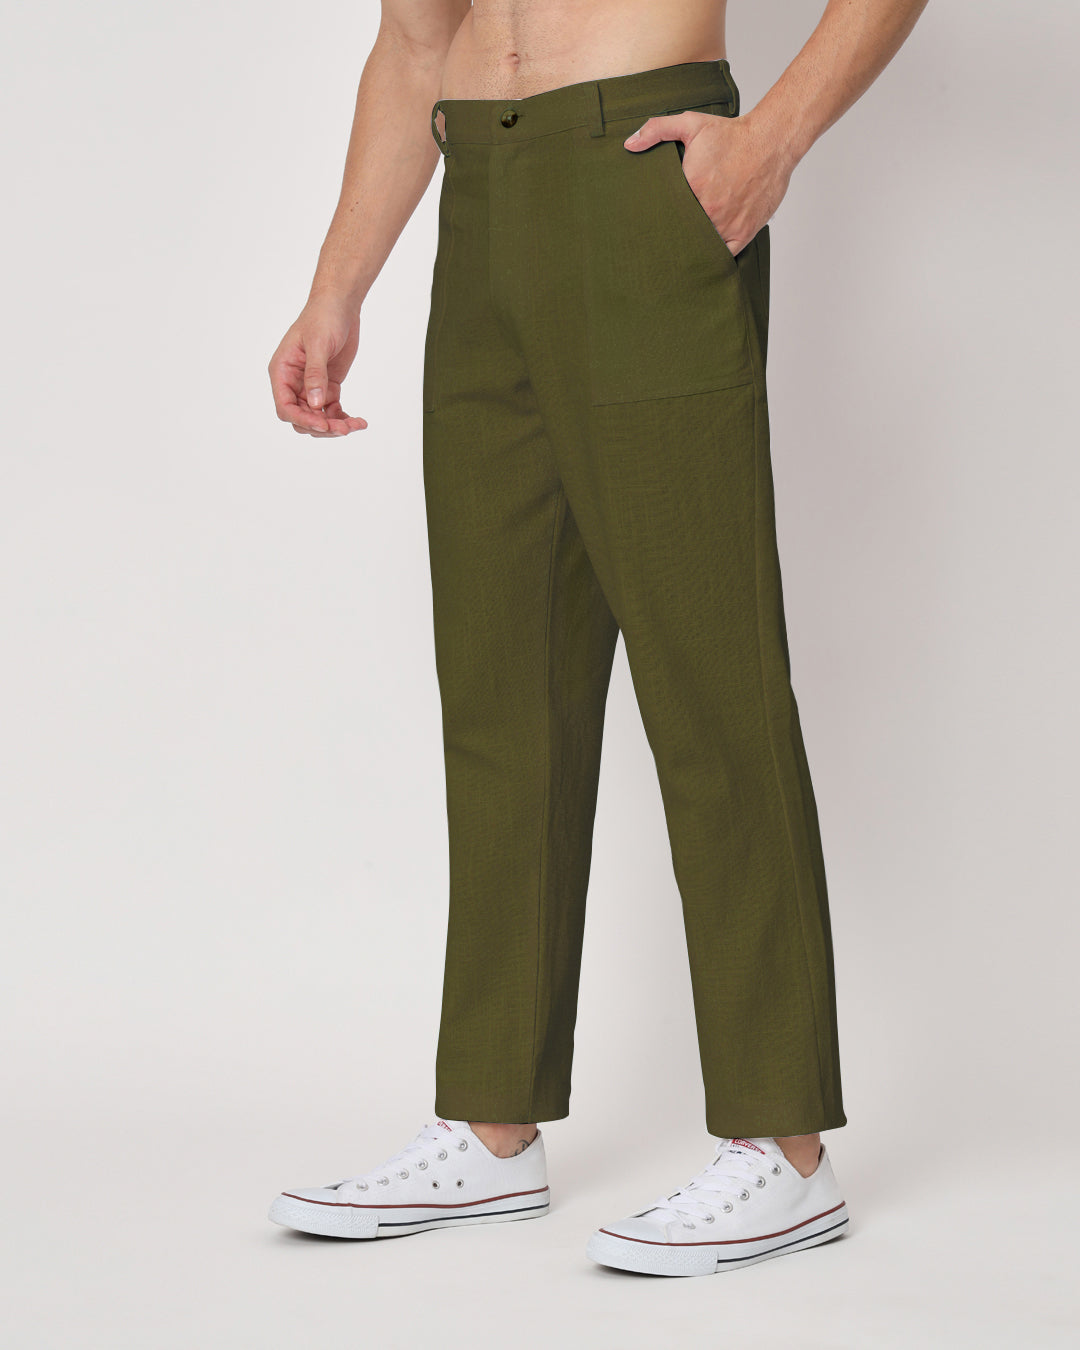 Comfy Ease Olive Green Men's Pants